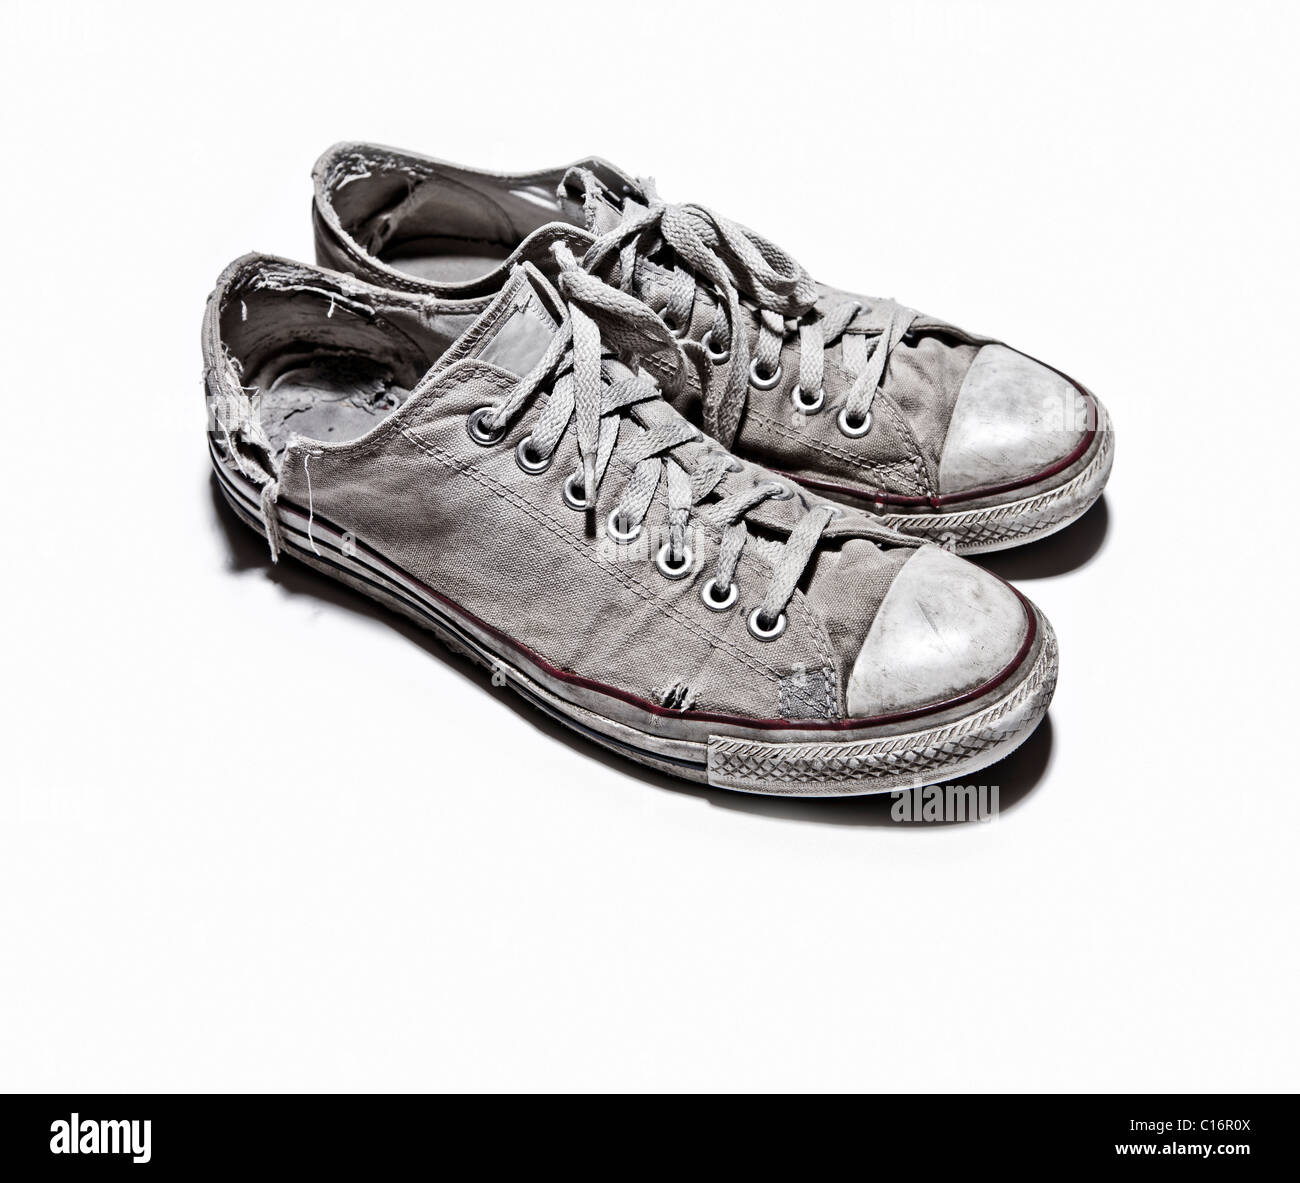 Used converse shoes immagini e fotografie stock ad alta risoluzione - Alamy